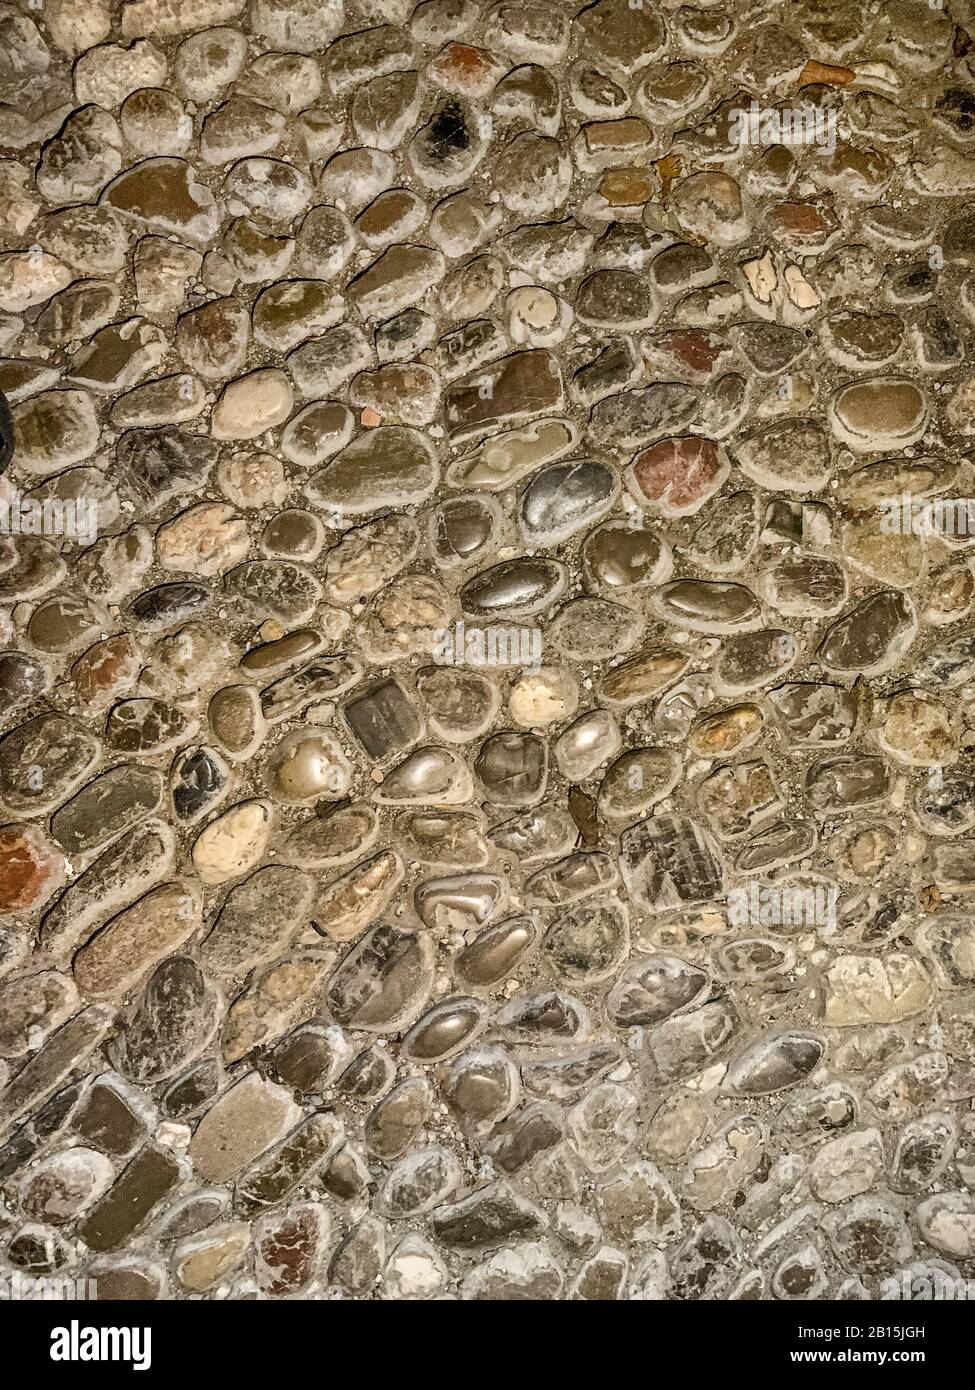 Boden aus Kieselsteinen des Flusses. Alte, verwitterte und zupfte Kopfsteinpflaster, aus runden Flusssteinen unterschiedlicher Größe, verfugt mit Mörtel. Nahaufnahme. Stockfoto